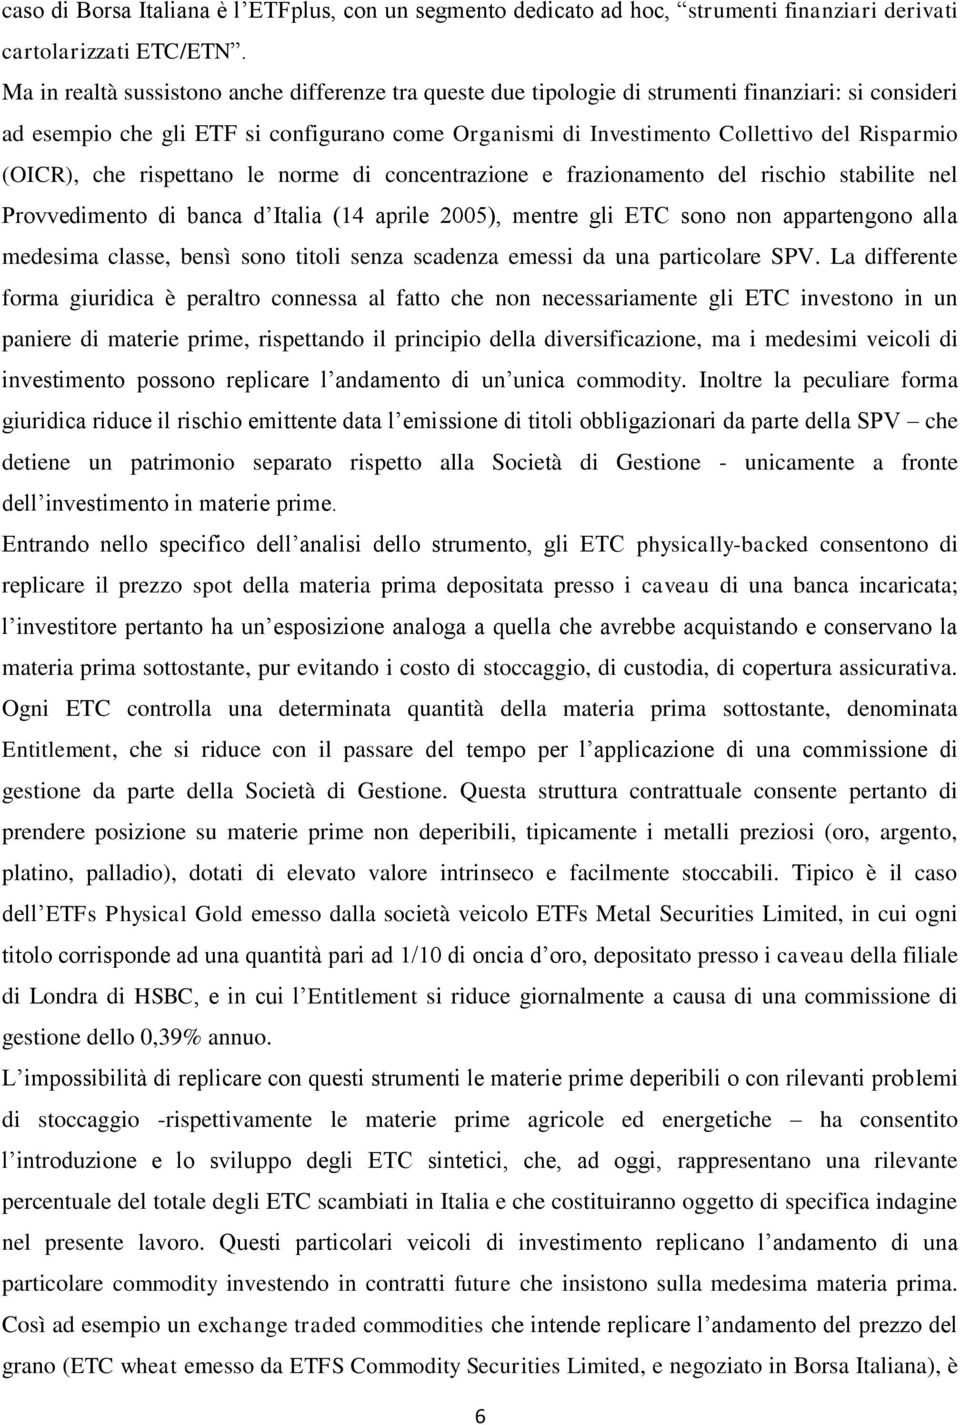 (OICR), che rispettano le norme di concentrazione e frazionamento del rischio stabilite nel Provvedimento di banca d Italia (14 aprile 2005), mentre gli ETC sono non appartengono alla medesima